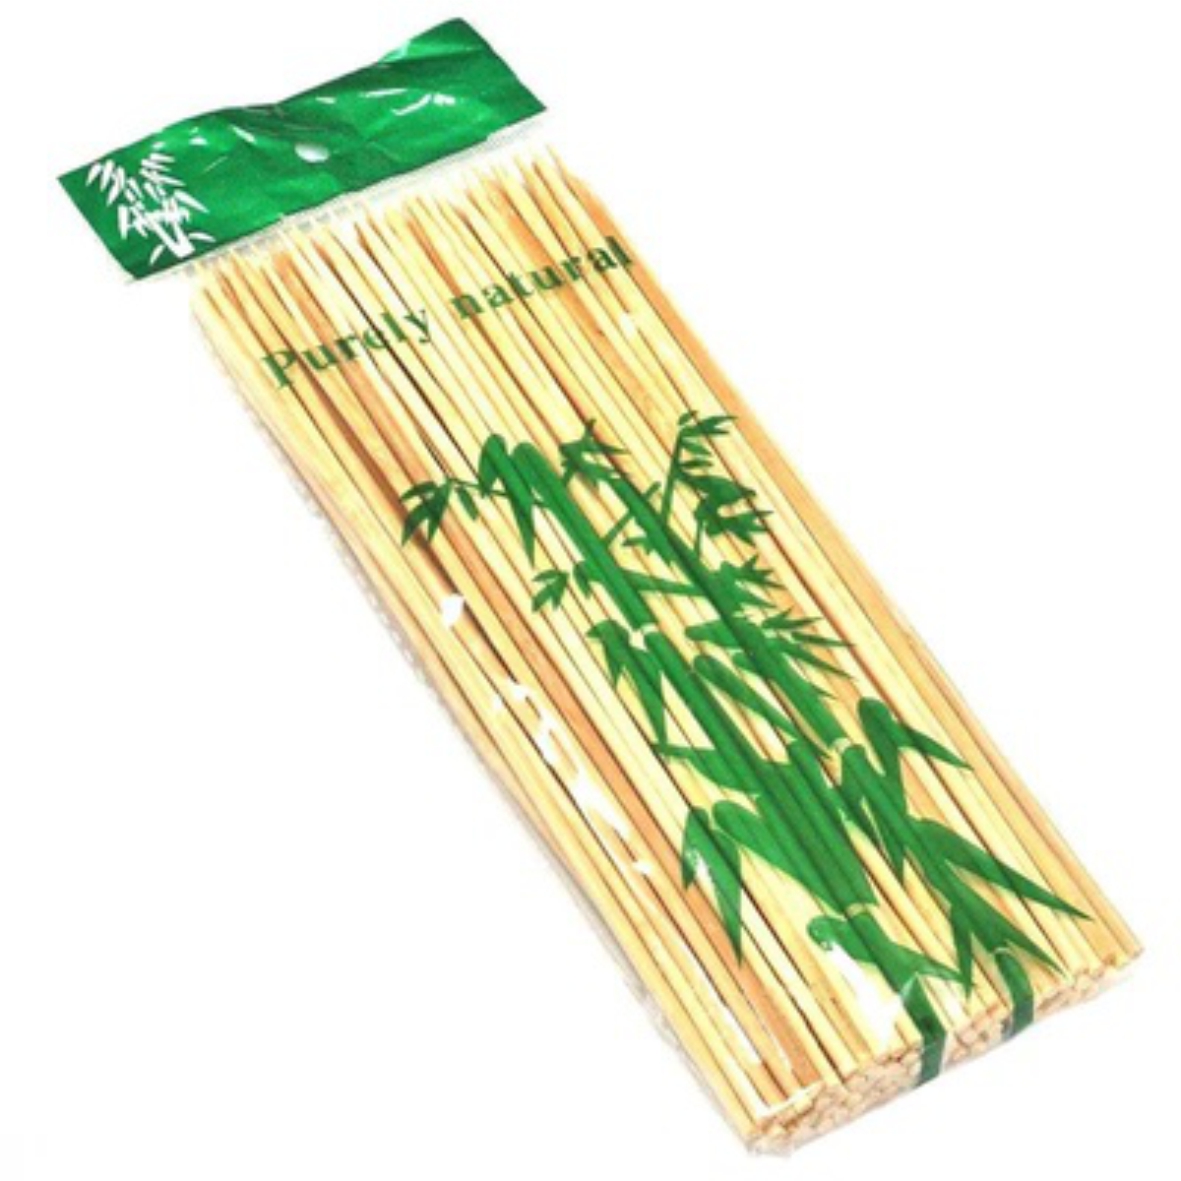 В каком магазине можно купить шпажки. Стек д/шашлыка бамбук 30см - 100шт. 1/100. Шпажки бамбуковые 30 см (100*1уп). Шпажки бамбук 30 см 100 шт. Бамбуковые палочки тонкие purely natural 20см, п735.